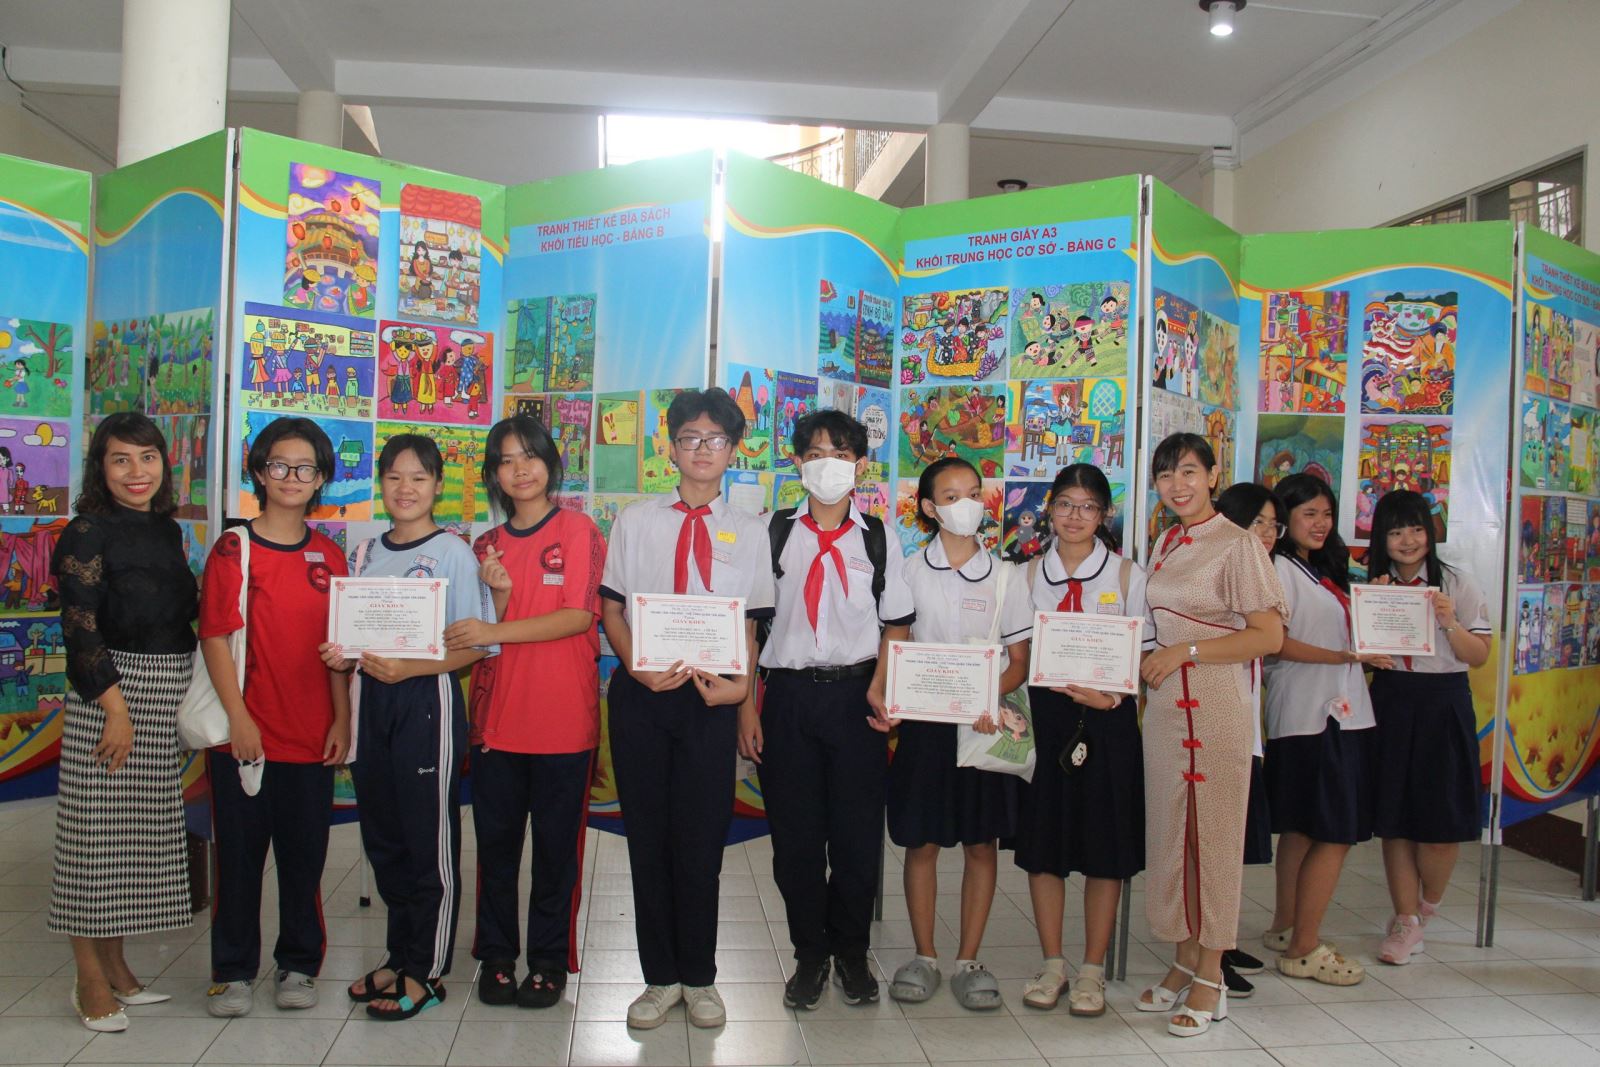 Quận Tân Bình: Tổ chức Tổng kết và trao giải Hội thi “Nét vẽ xanh” lần thứ XXVII năm học 2023-2024